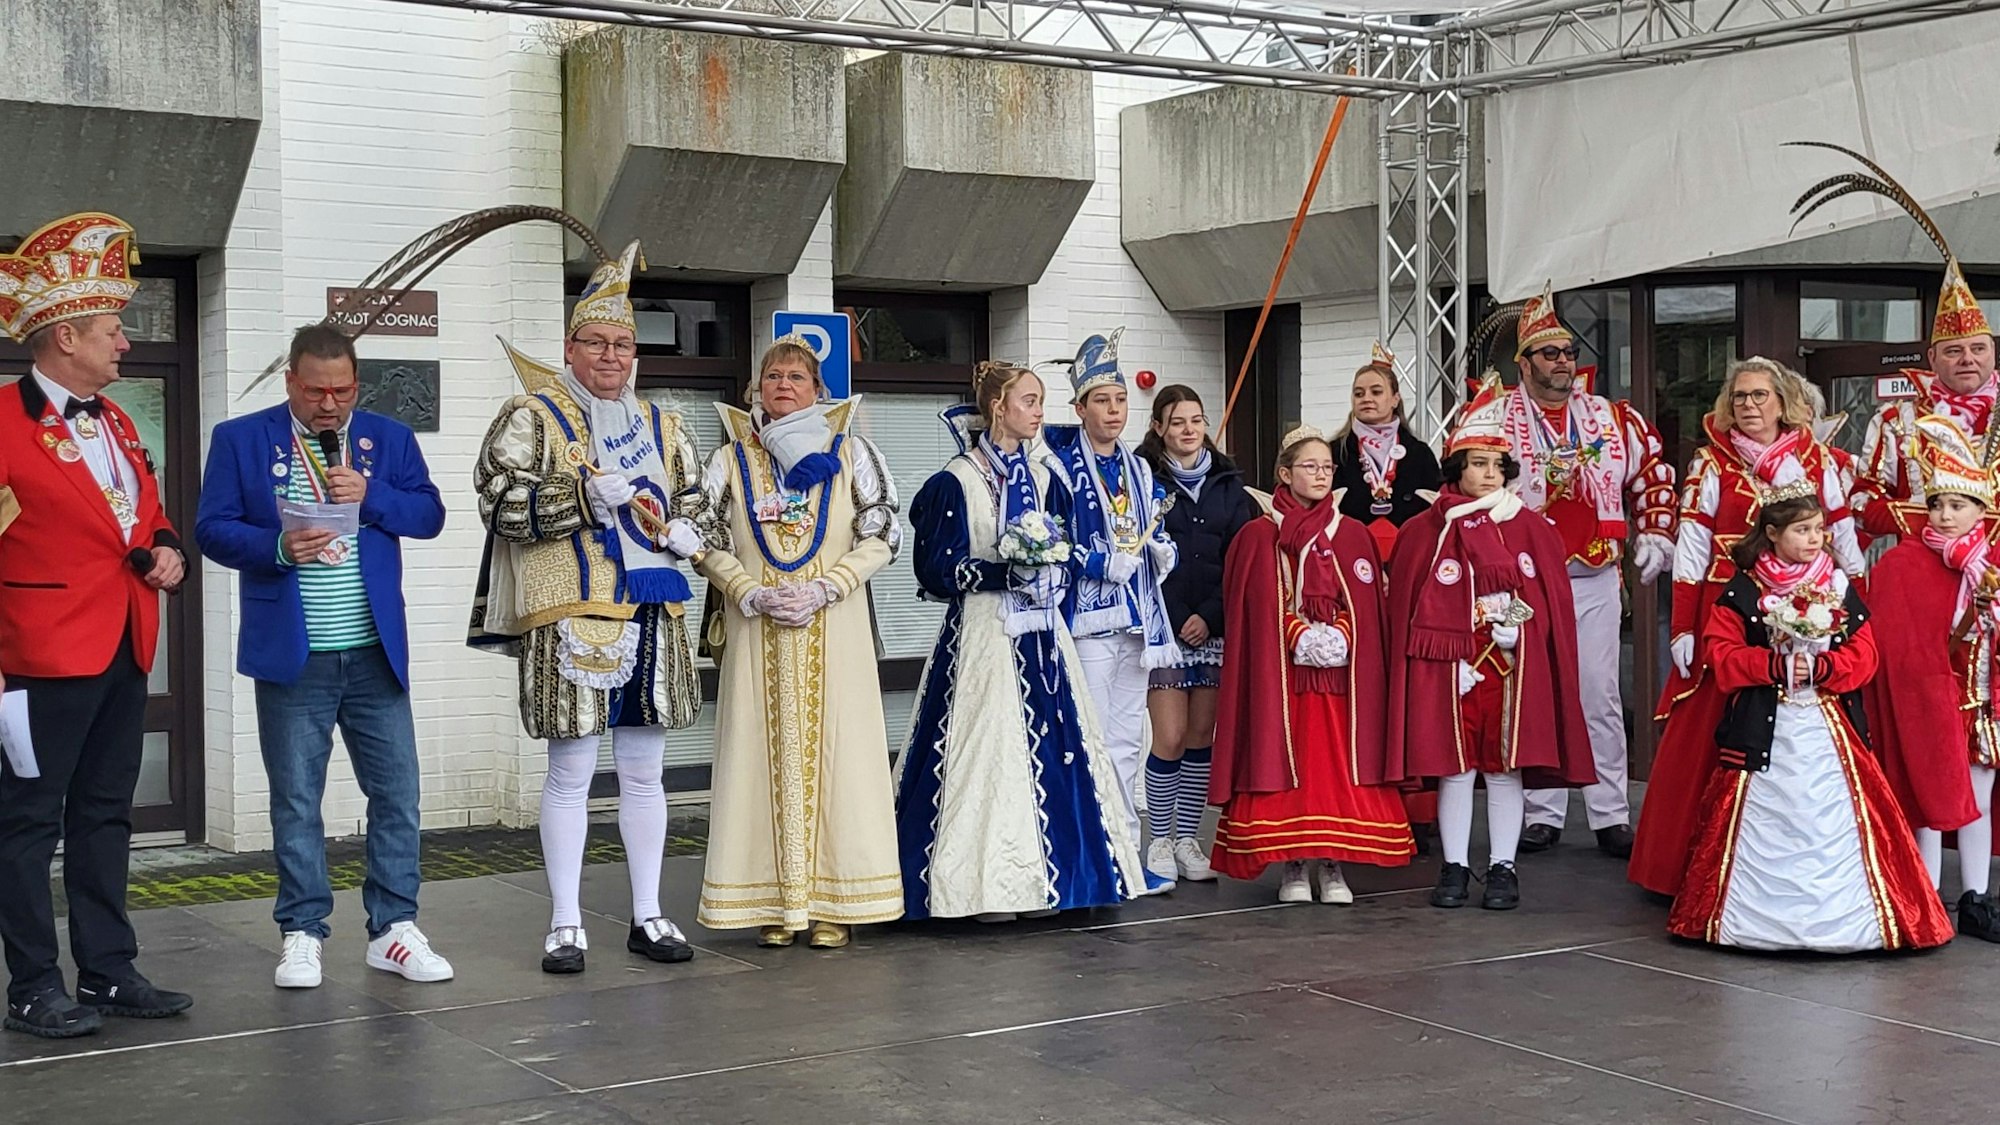 Erwachsene Prinzenpaare und Kinderprinzenpaare in ihren Ornaten stehen auf einer Bühne vor dem Rathaus in Oberpleis.